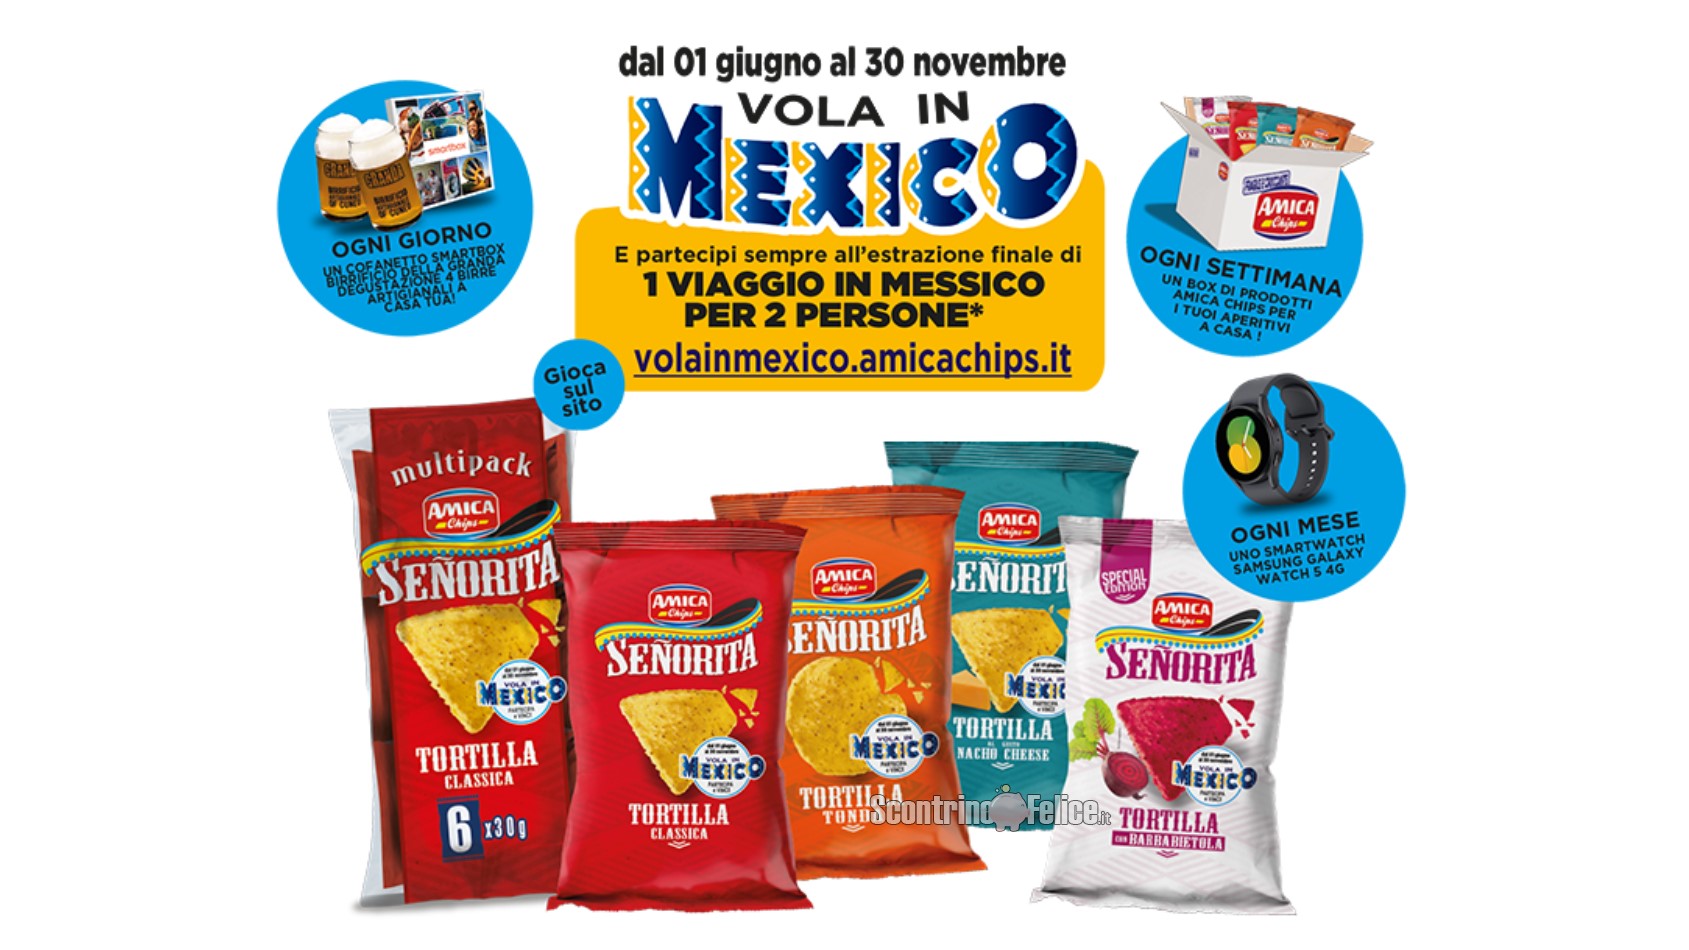 Concorso Amica Chips "Vola in Mexico": vinci Smartbox, prodotti, smartwatch Samsung e 1 viaggio in Messico